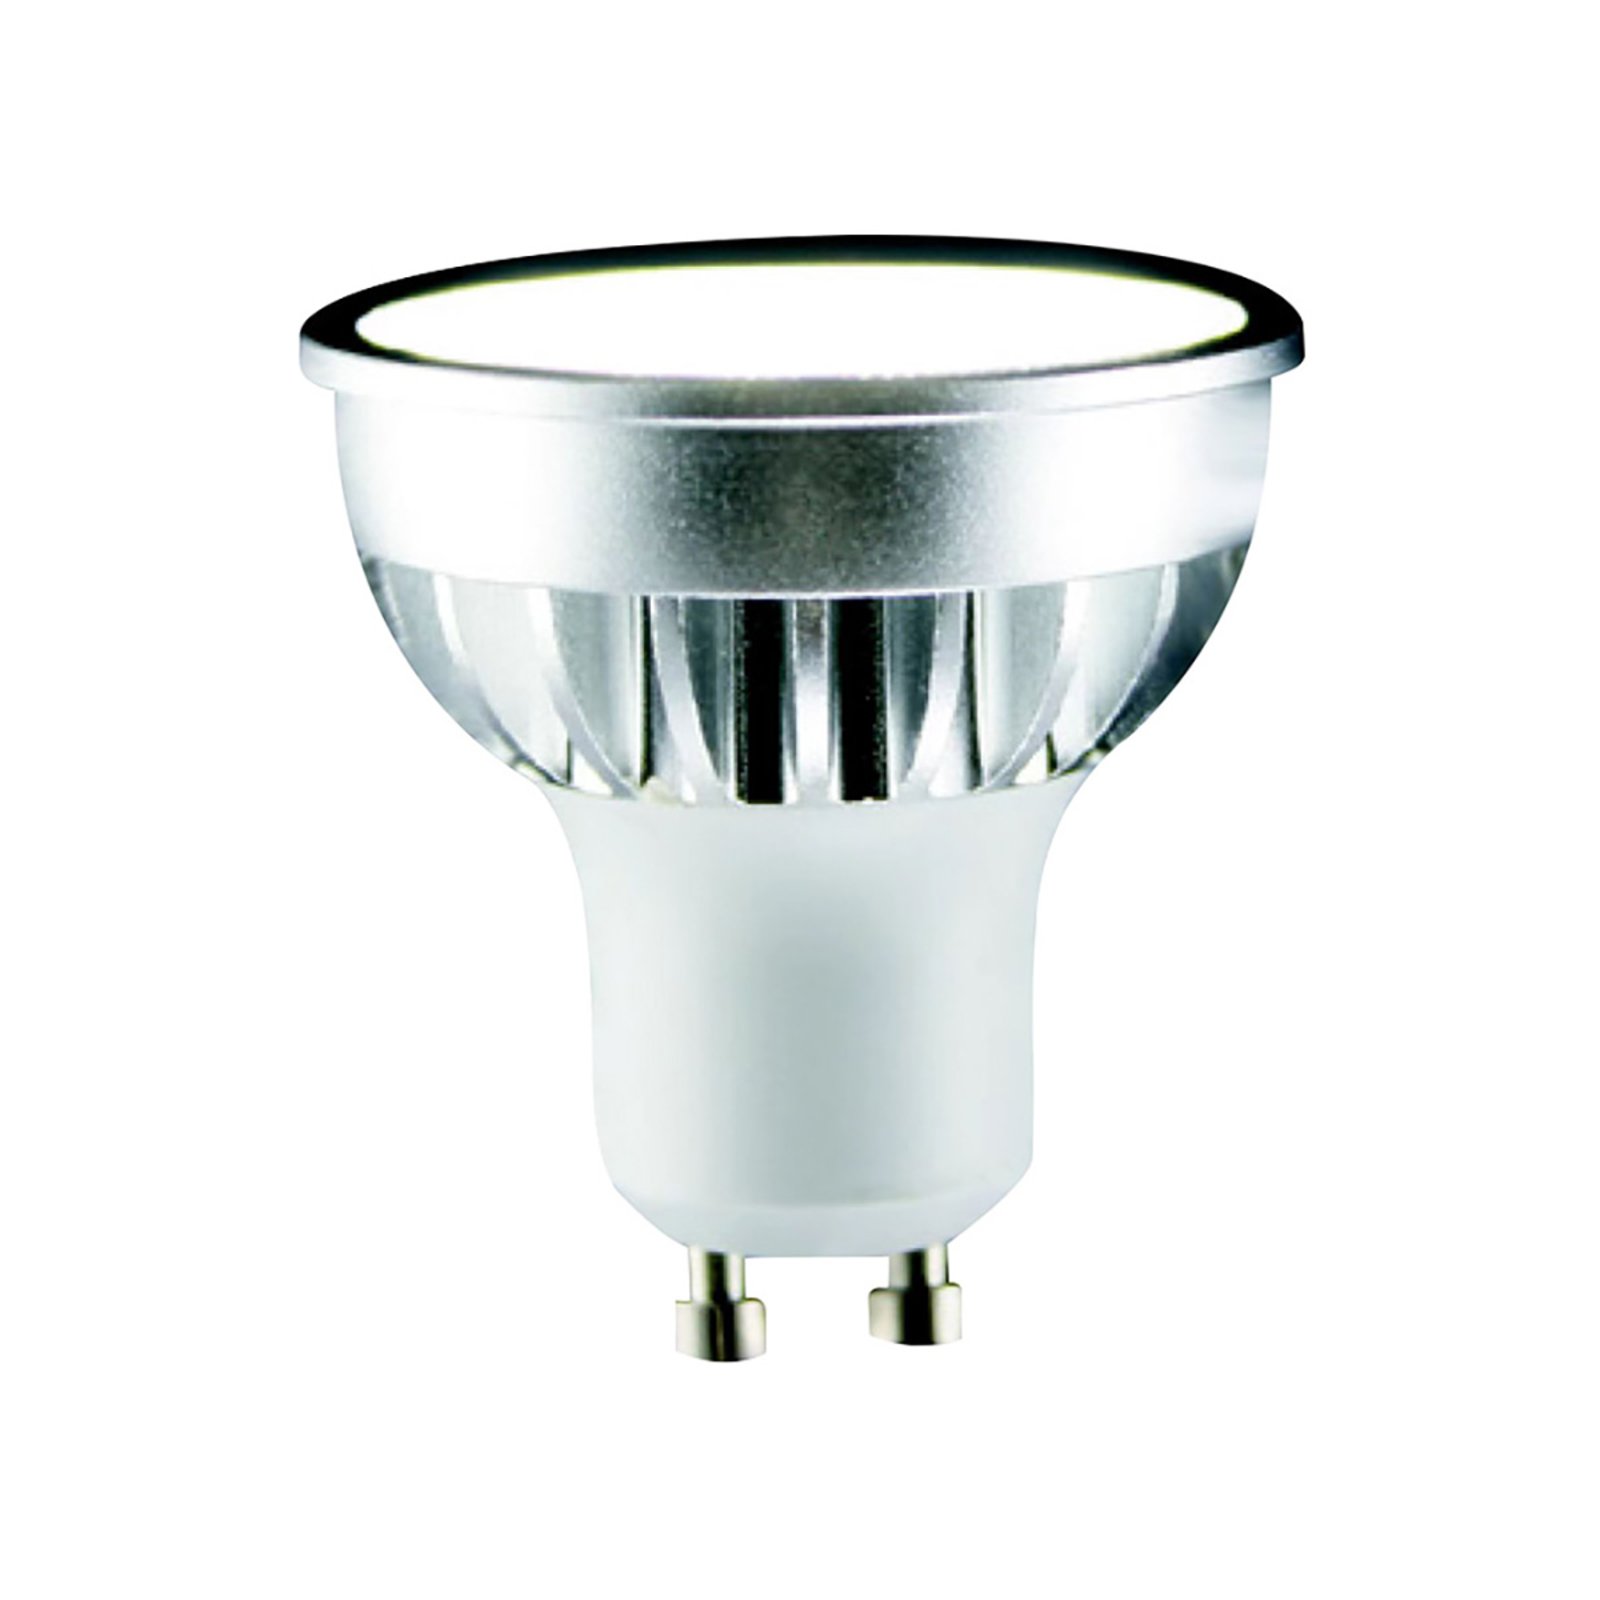 Reflector LED bulb GU10 5 W 4,000 K 55°